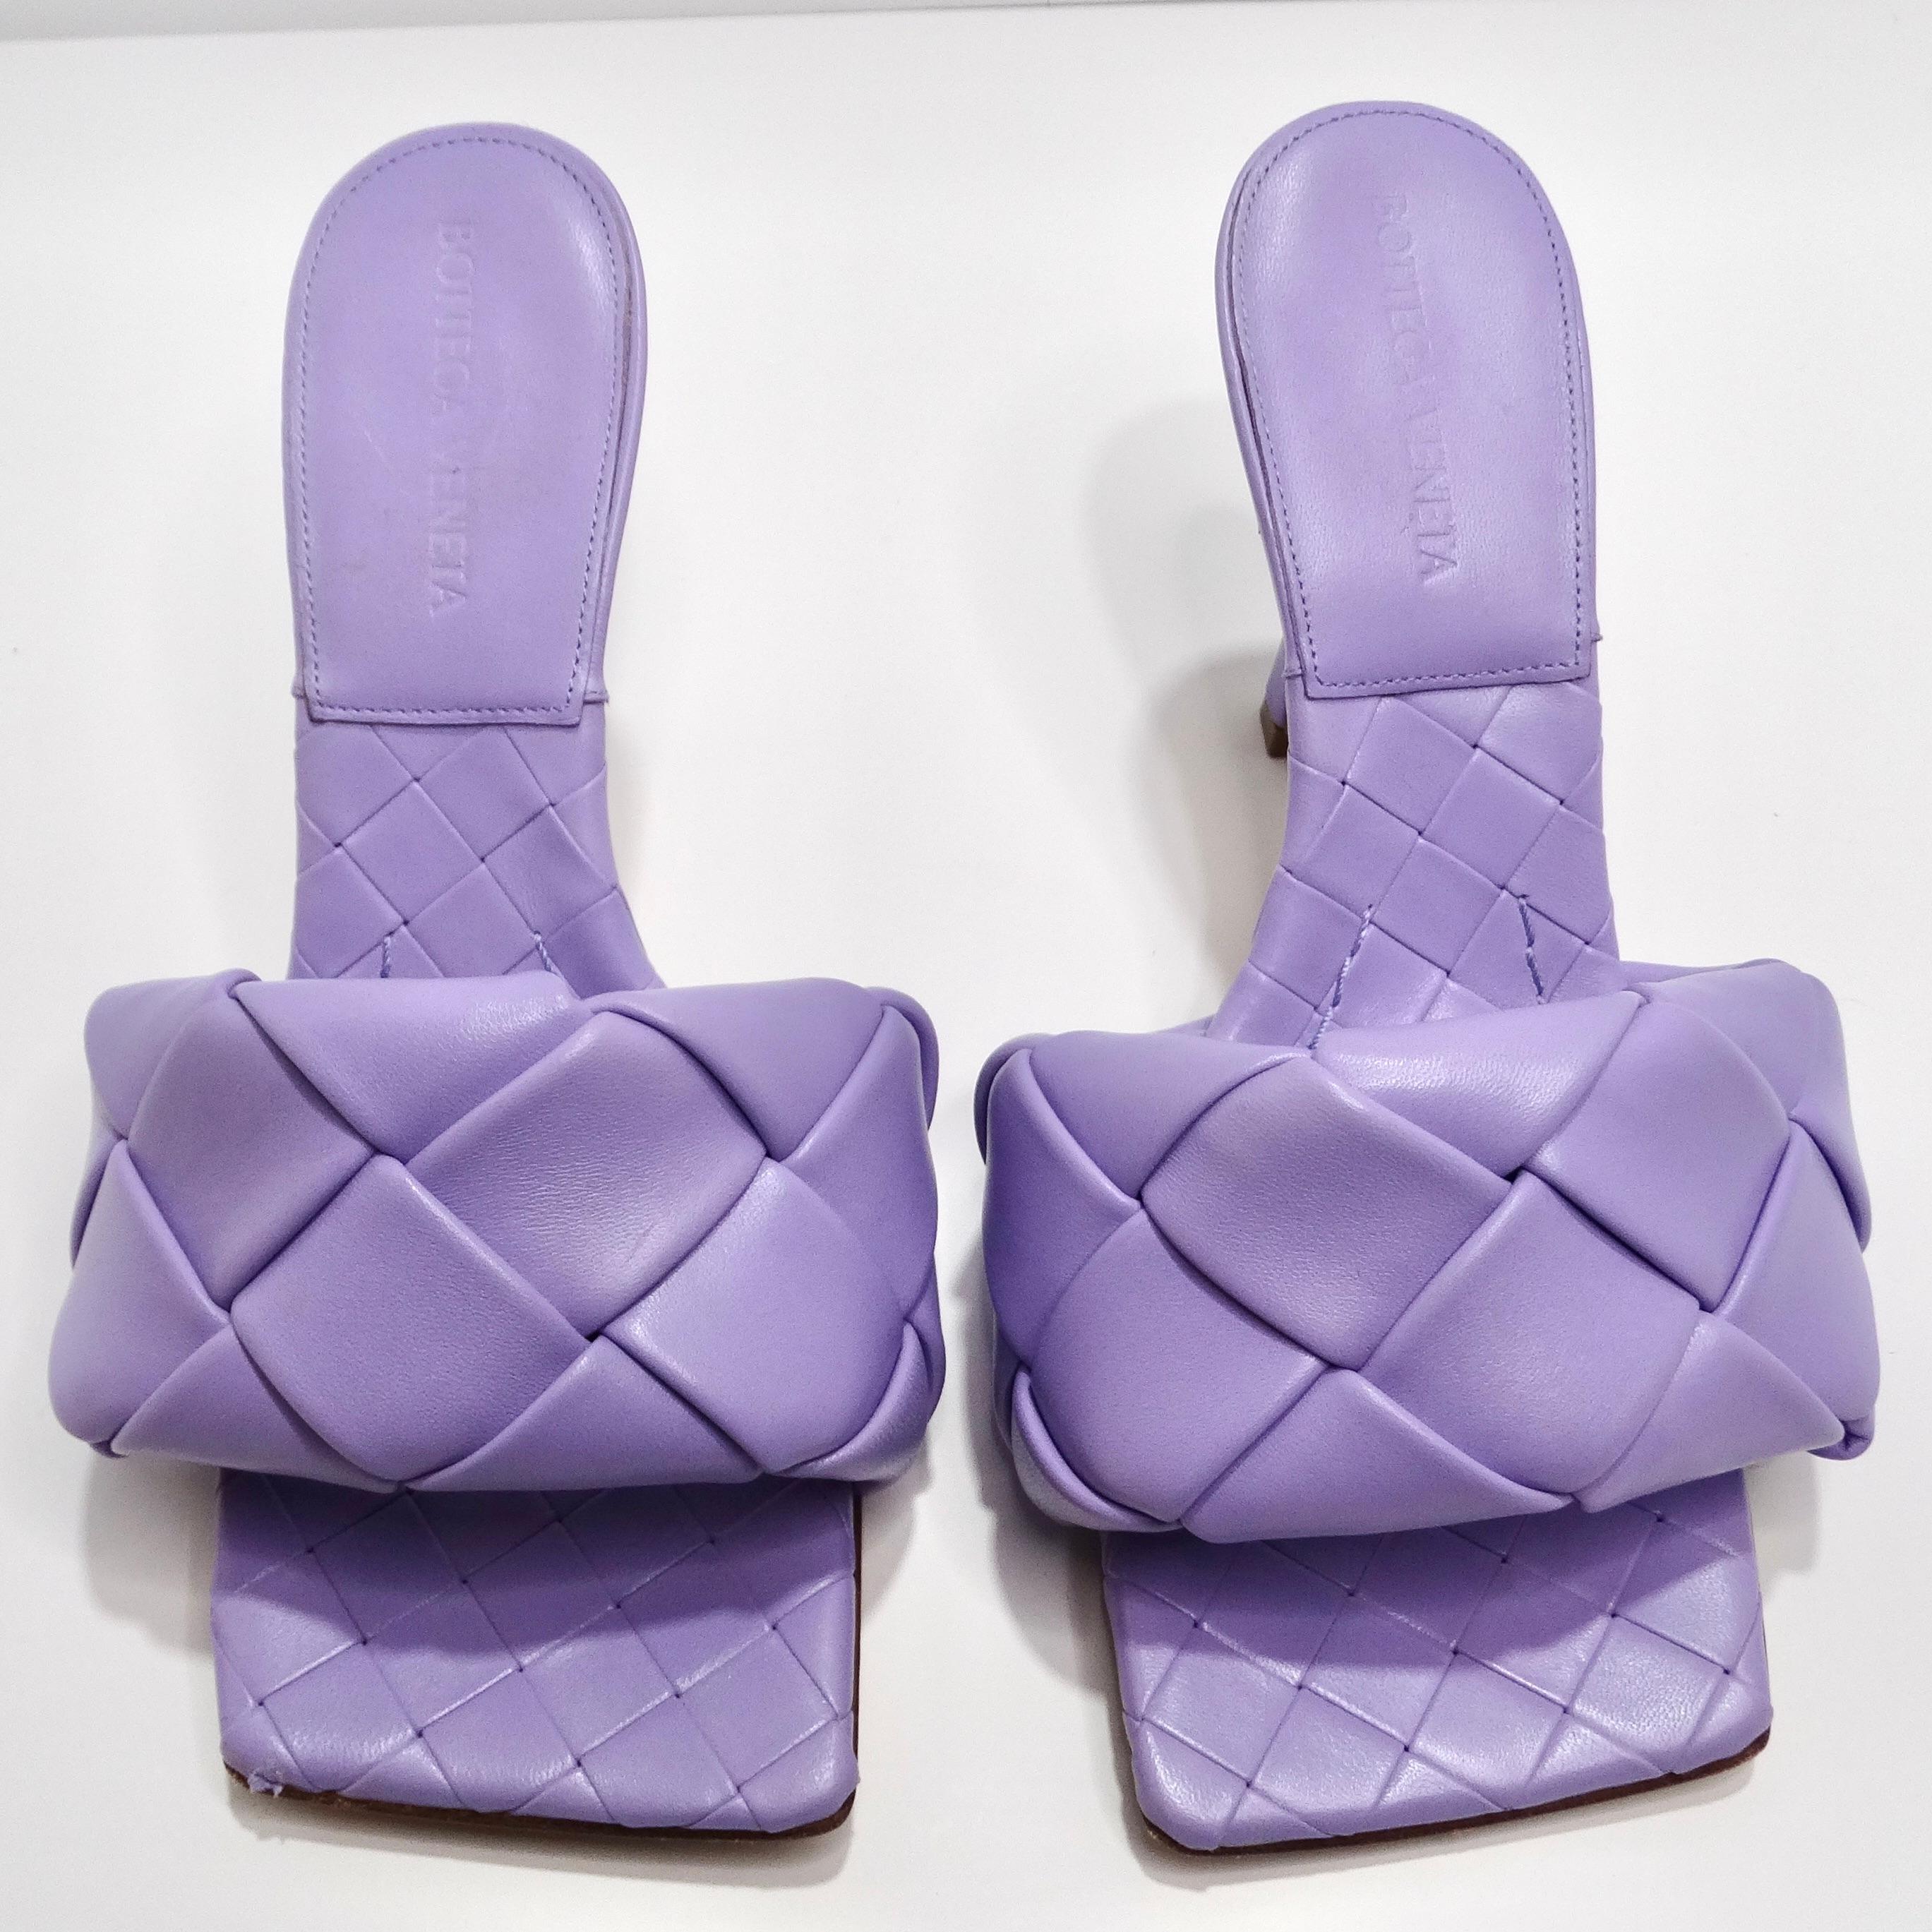 Faites preuve de sophistication et de style avec les sandales Lido violettes de Bottega Veneta. Ces superbes talons de style mule respirent l'élégance et le charme, ce qui en fait le complément idéal de votre garde-robe.

Réalisées avec le motif en